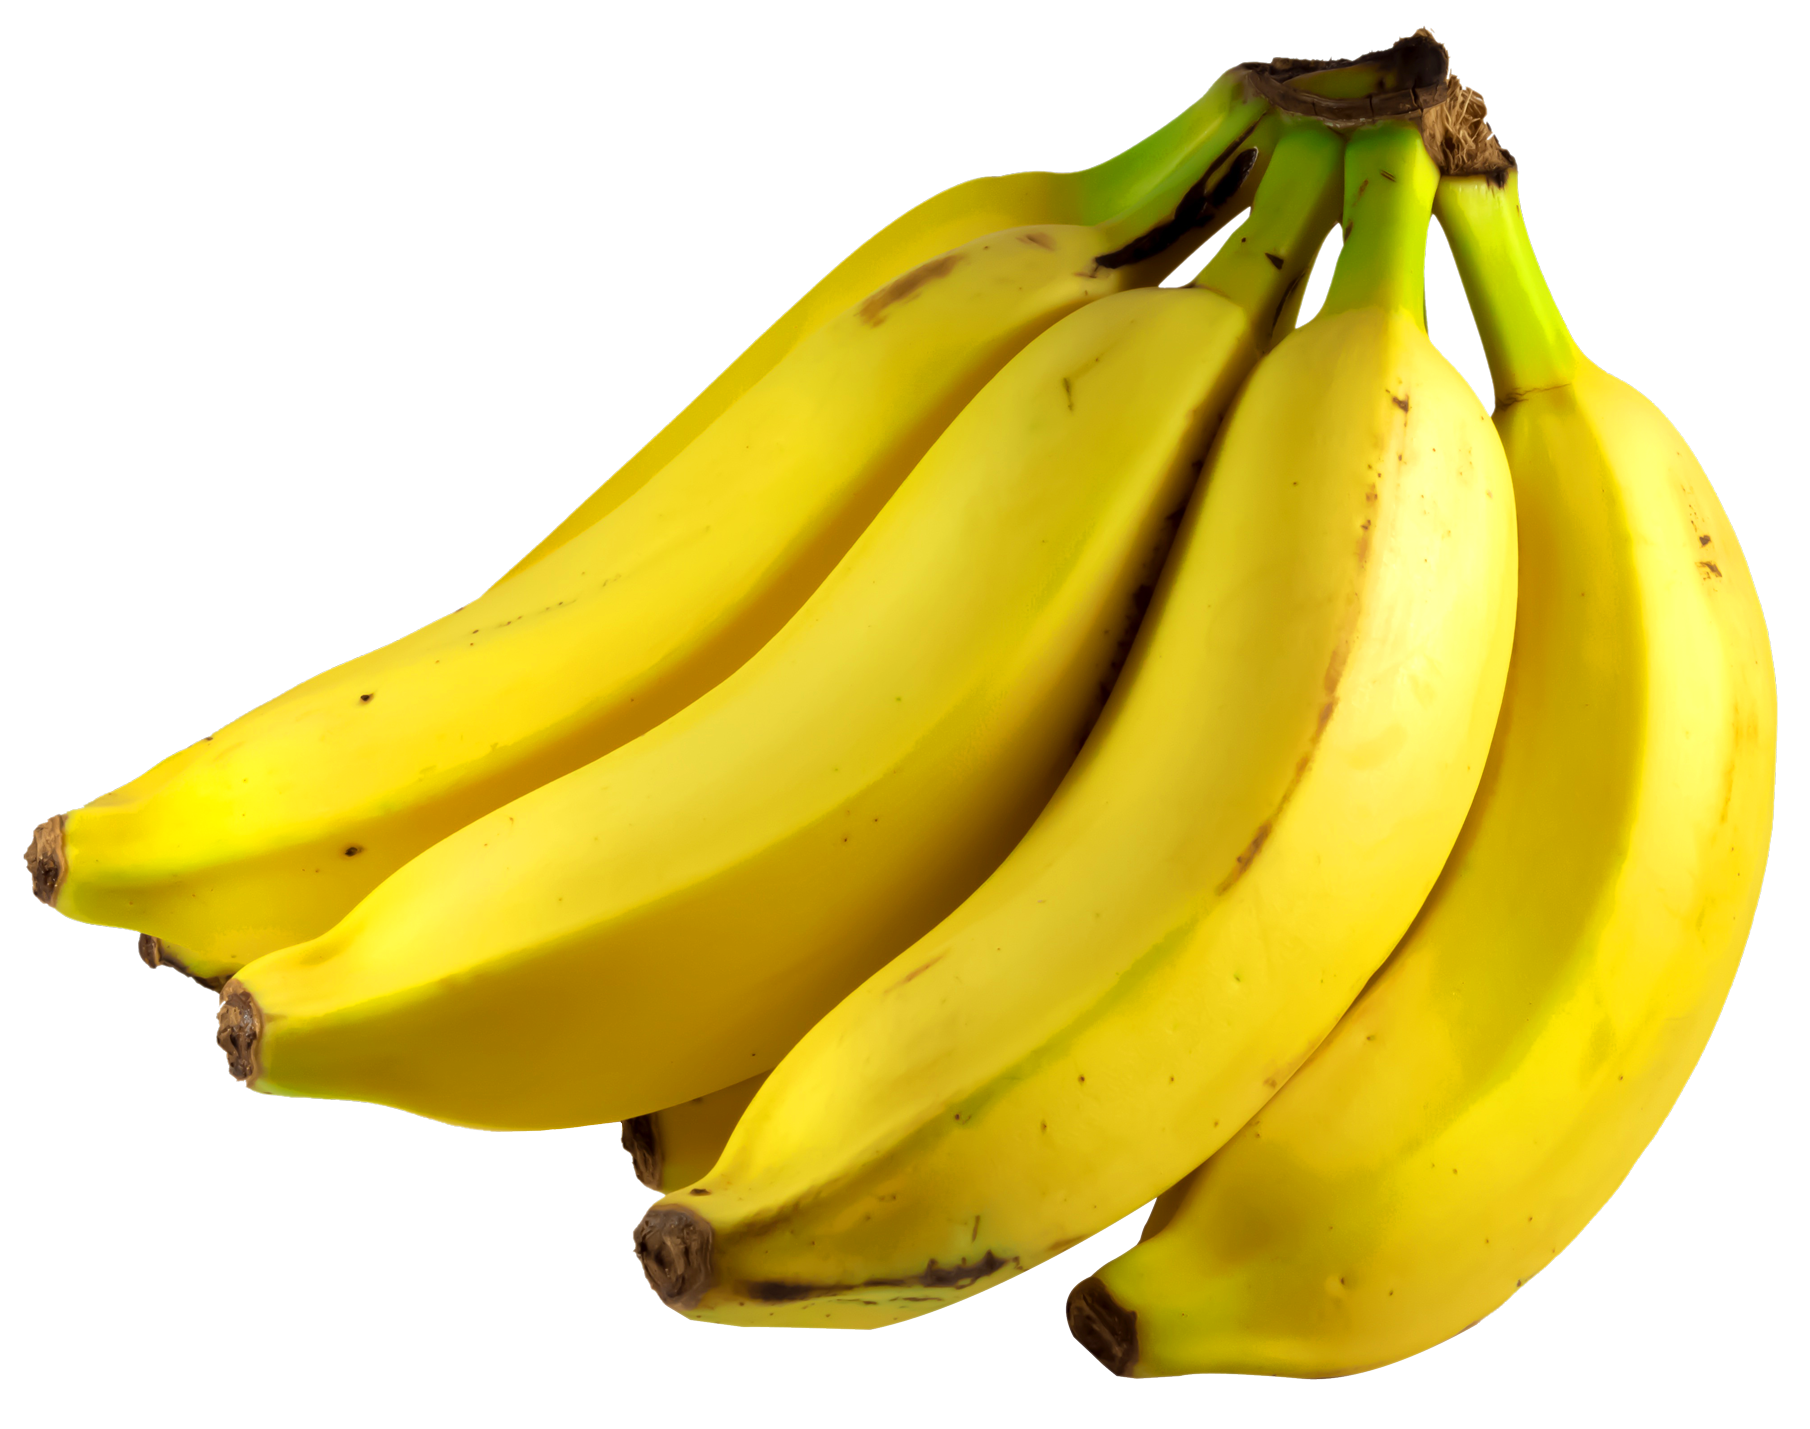 Banana PNG Image.